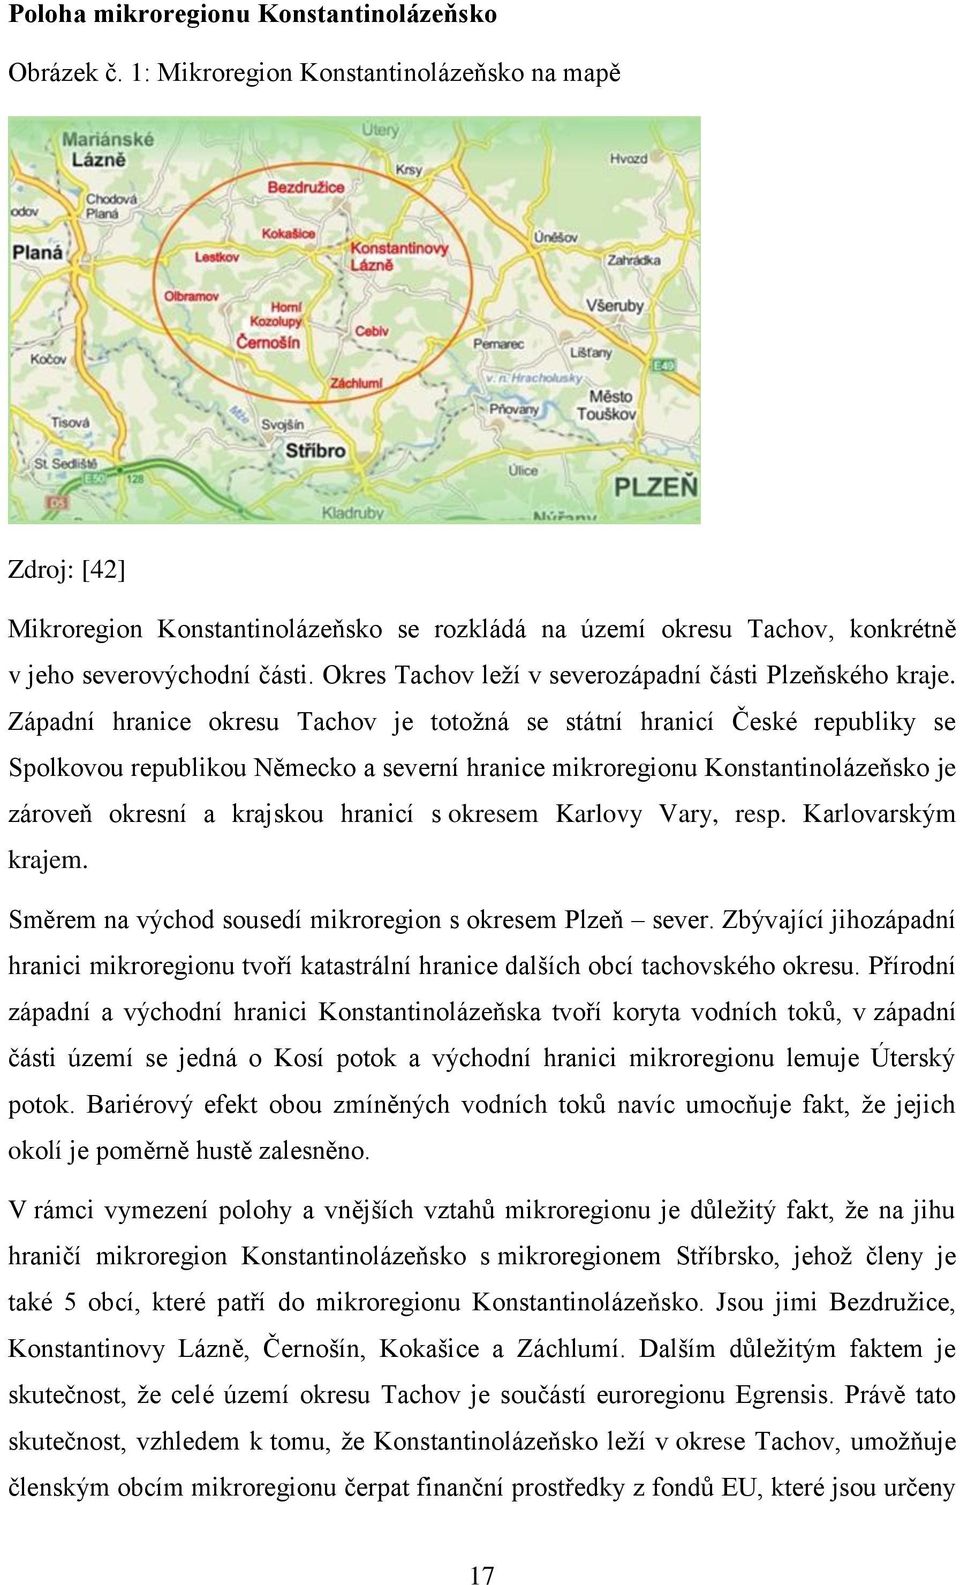 Okres Tachov leží v severozápadní části Plzeňského kraje.